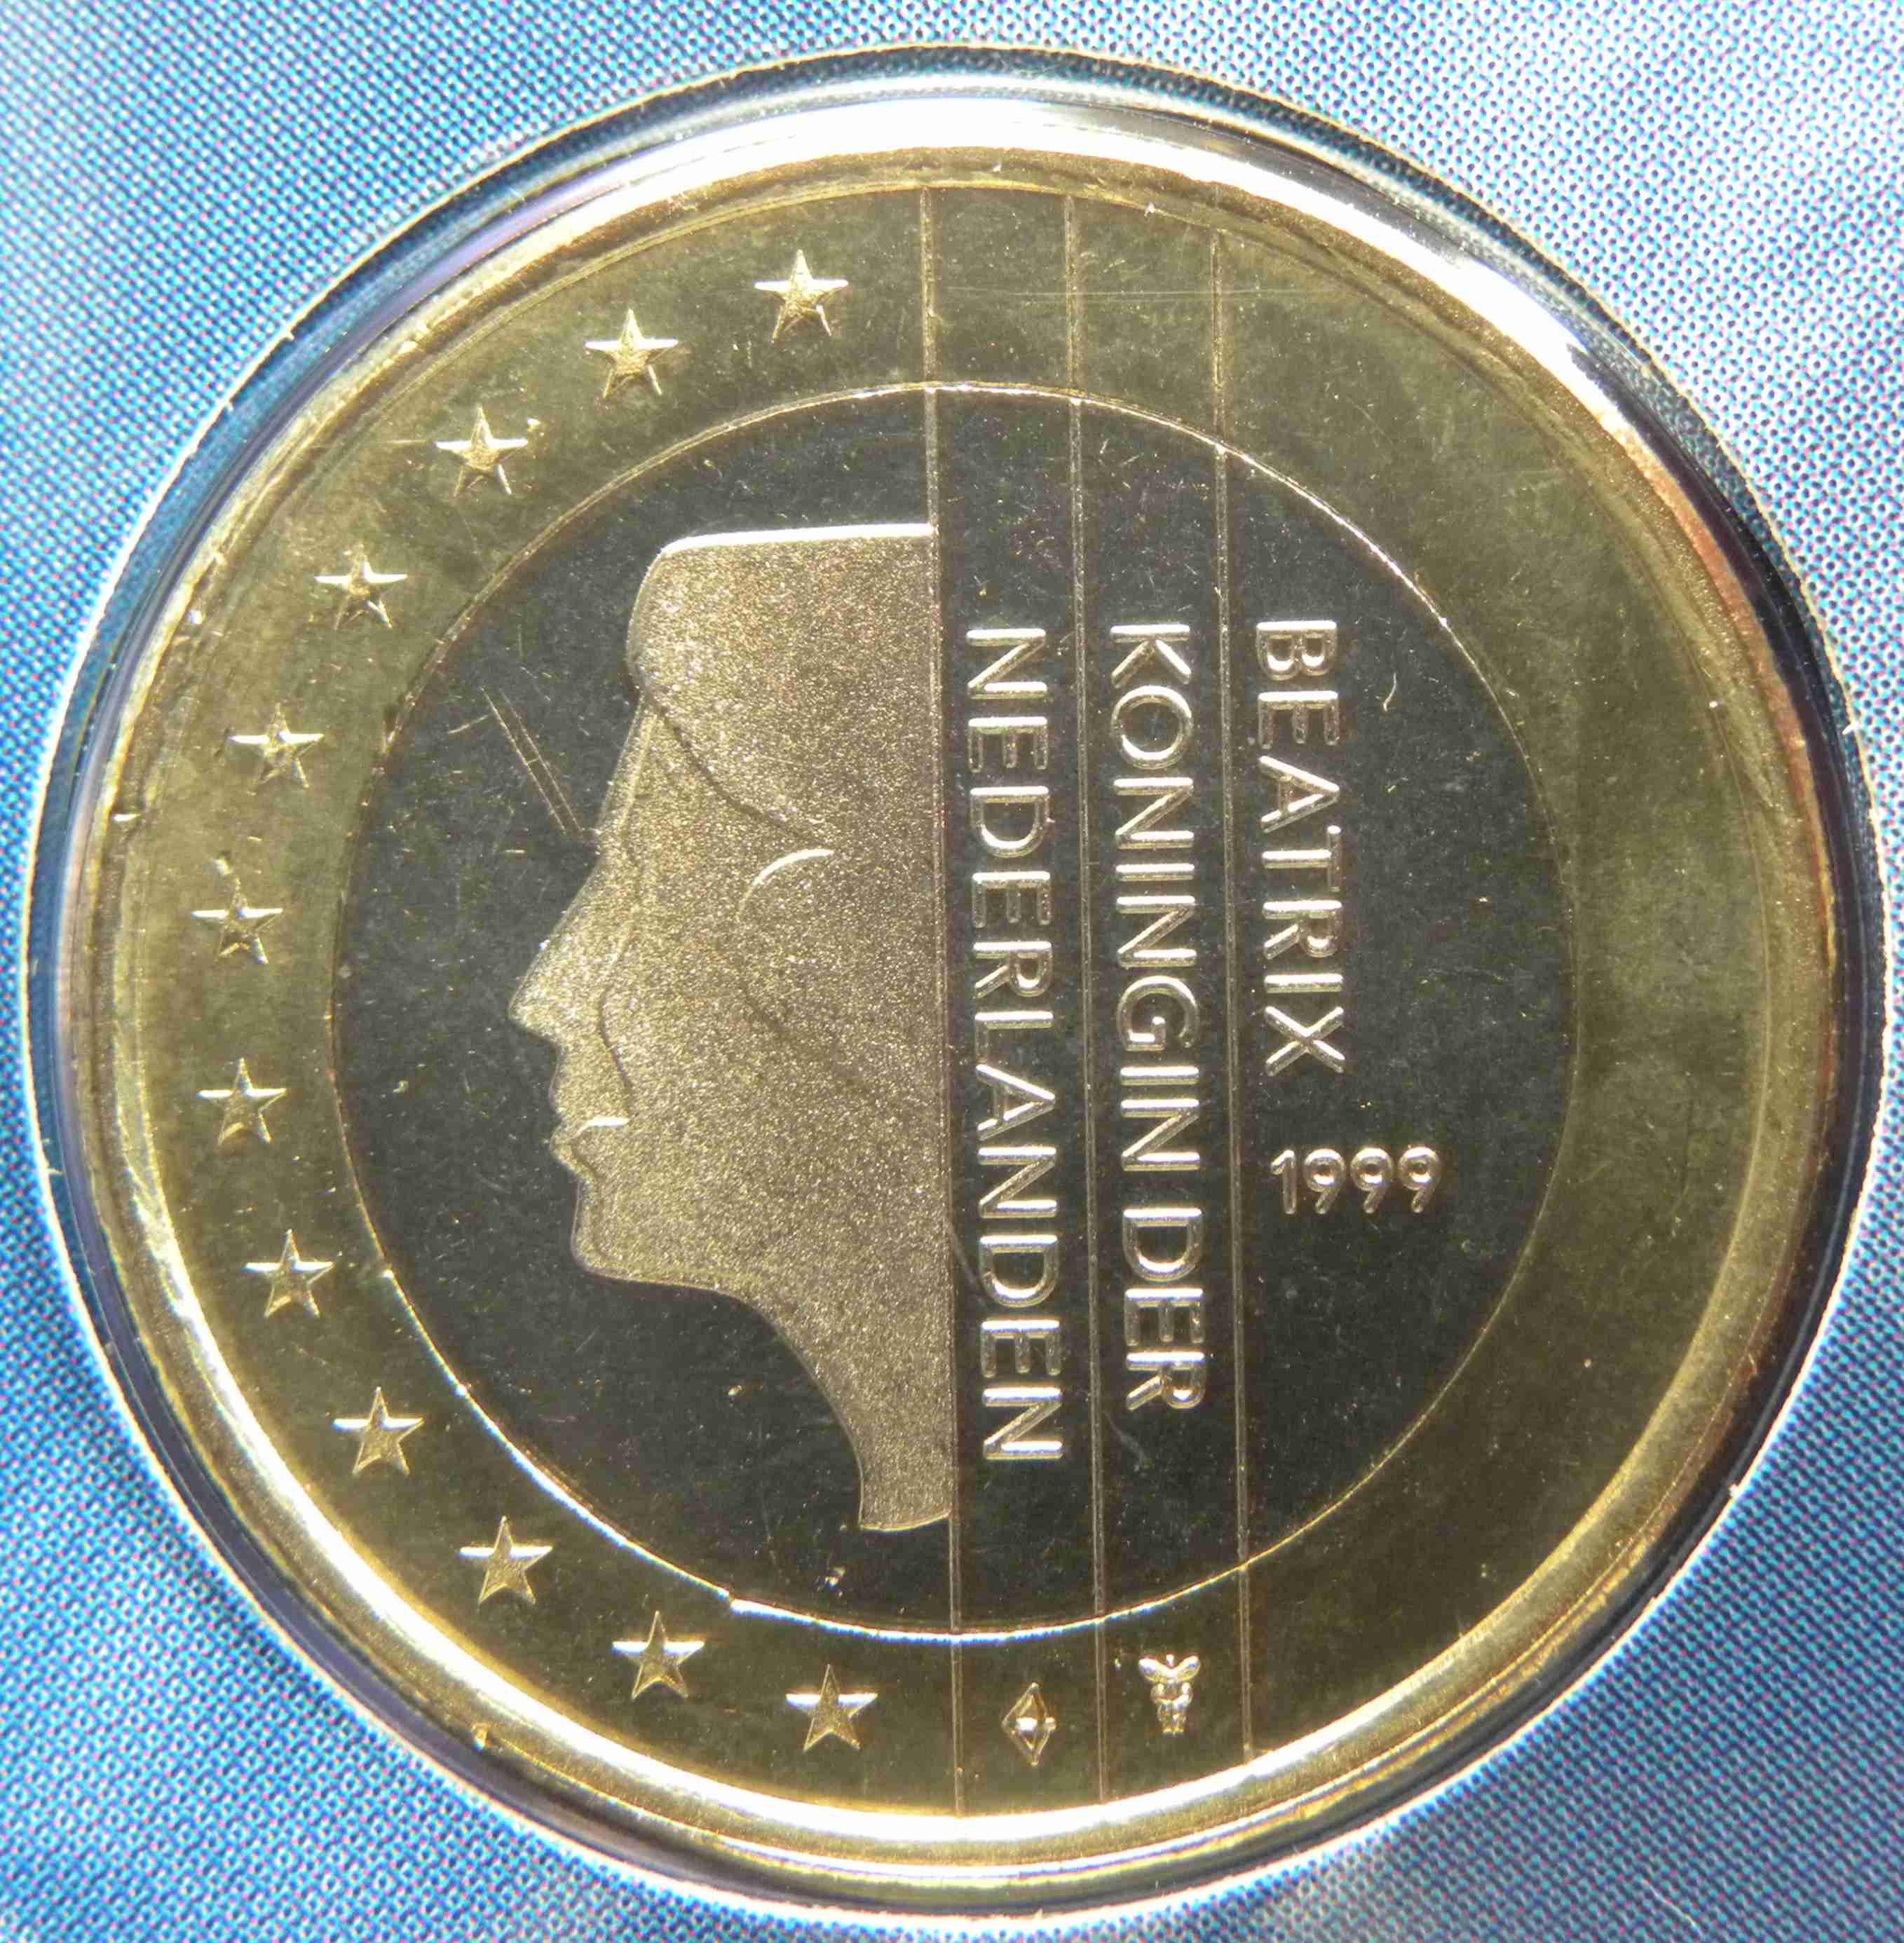 PaysBas Monnaies Euro UNC 1999 ᐅ Valeur, tirage et images sur pieces